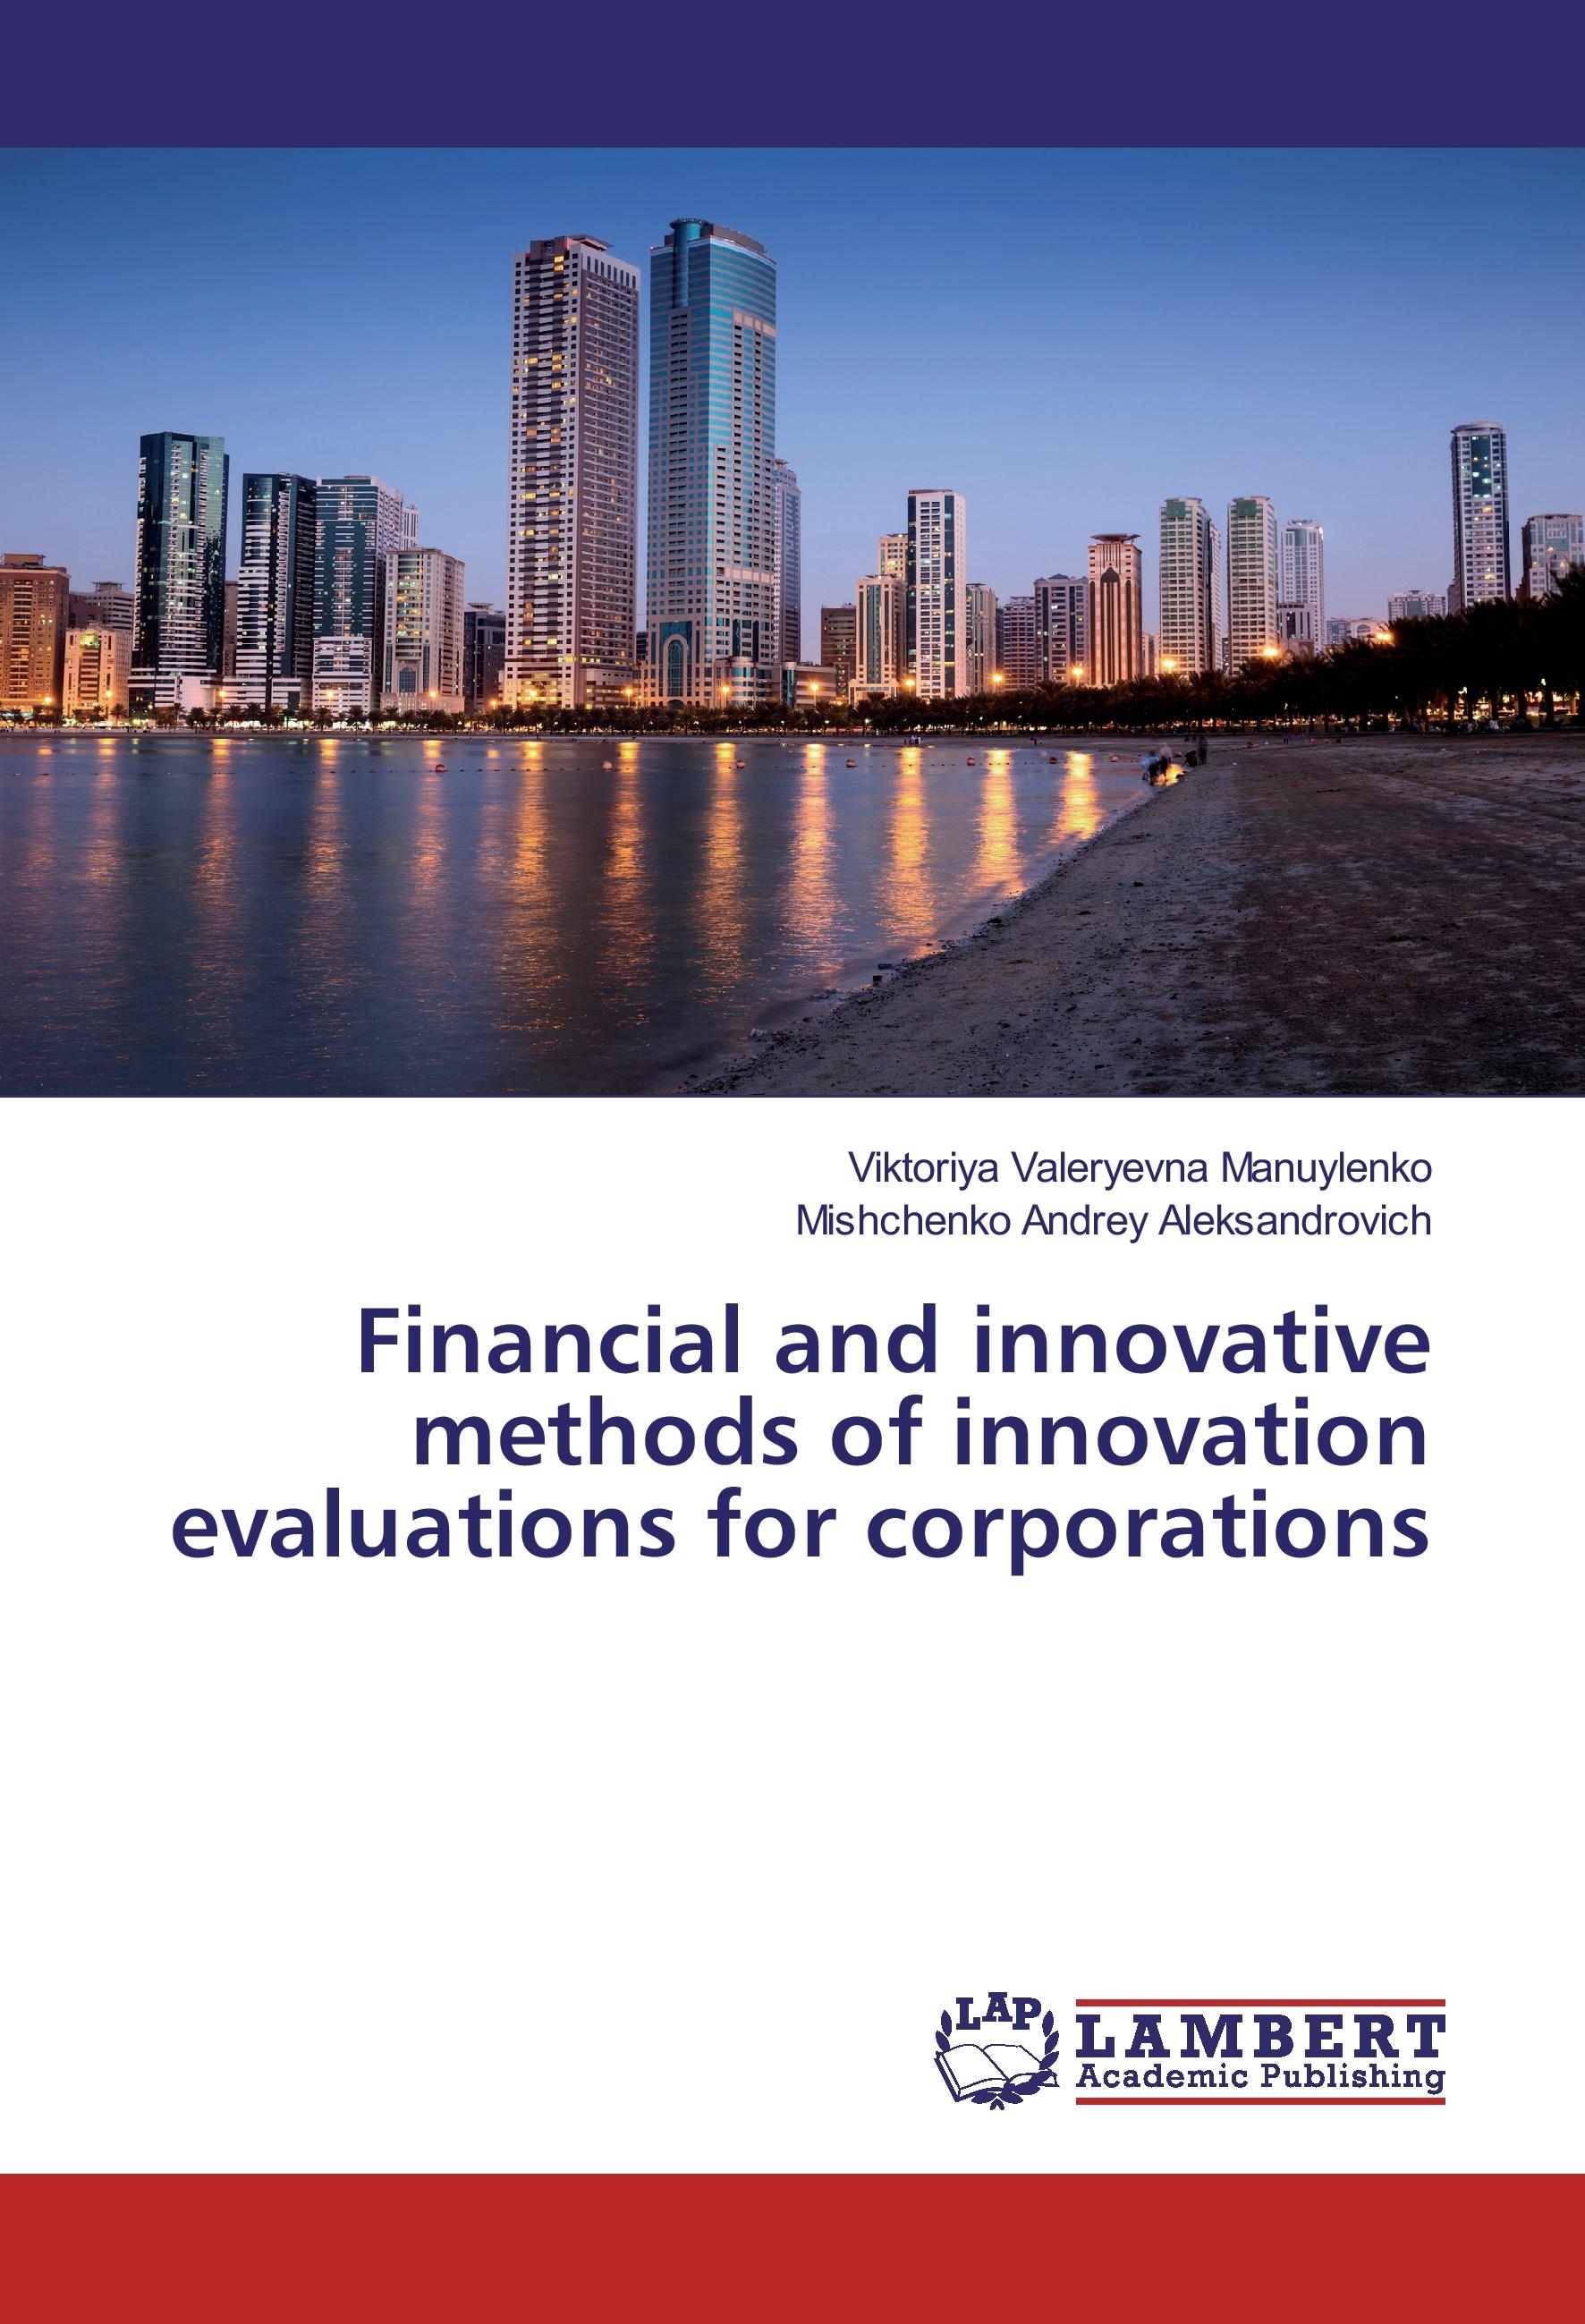 Financial and innovative methods of innovation evaluations for corporations - Viktoriya Valeryevna Manuylenko Mishchenko Andrey Aleksandrovich